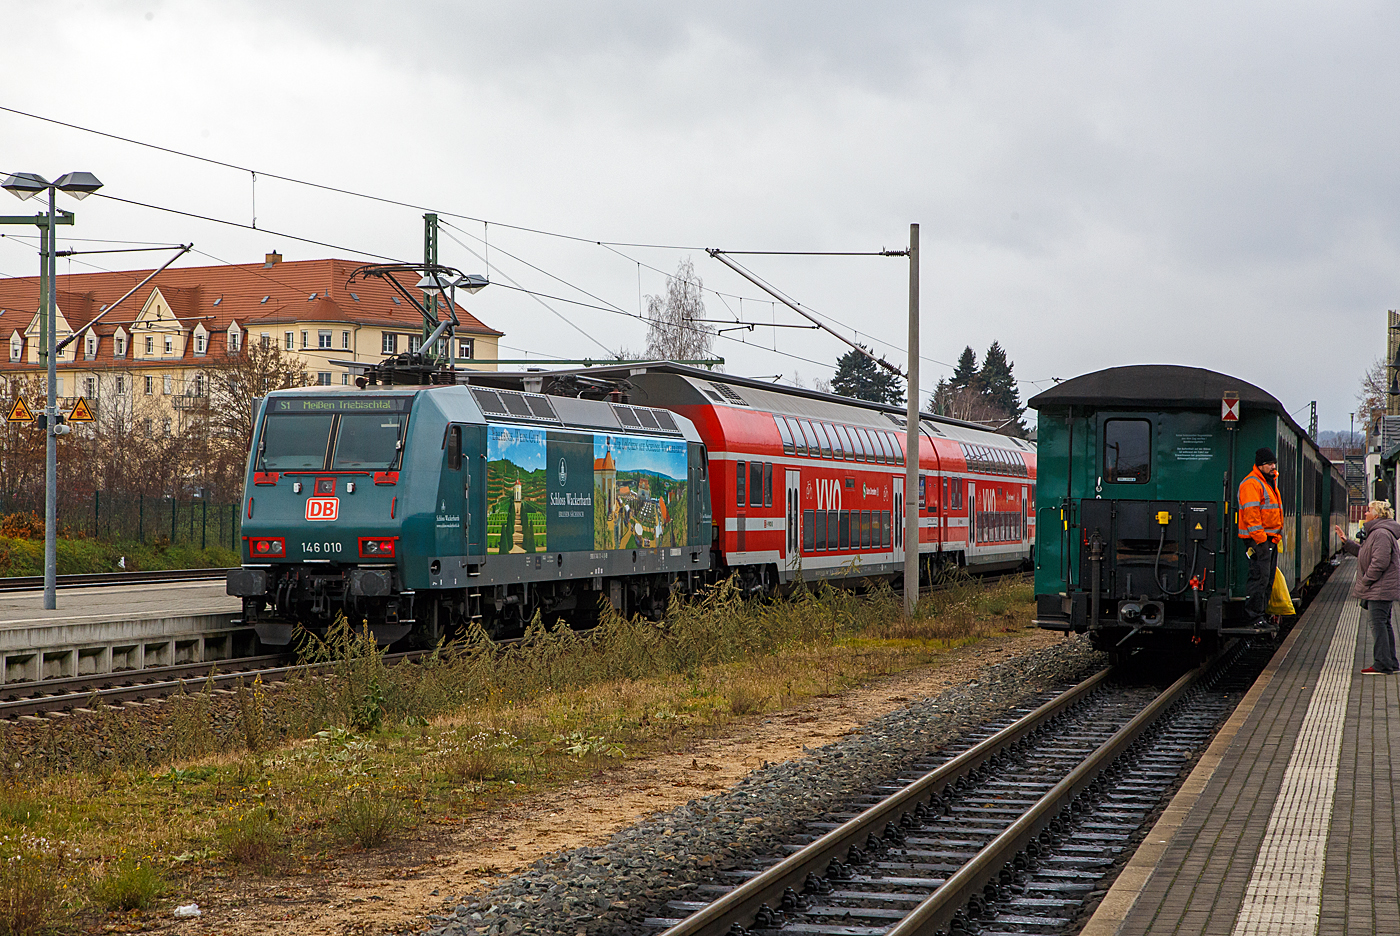 Farblich passte eigentlich die 146 010-4 (91 80 6146 010-4 D-DB), eine TRAXX P160 AC1 mit Werbung für das Sächsische Staatsweingut Schloss Wackerbarth, sehr gut rechts zu dem Lößnitzdackel-Zug. Nur müsste man sie erst einmal von Normalspur auf 750 mm Schmalspur umspuren.

Bahnhof Radebeul Ost am 07.12.2022:  Links schieb die 146 010 nun die S1 nach Meißen-Triebischtal der S-Bahn Dresden weiter in Richtung Meißen. Während rechts ein Wagenzug der SDG - Sächsische Dampfeisenbahngesellschaft mbH als Lößnitzgrundbahn steht, dieser fährt planmäßig ca. 30 Minuten später in Richtung Moritzburg.
